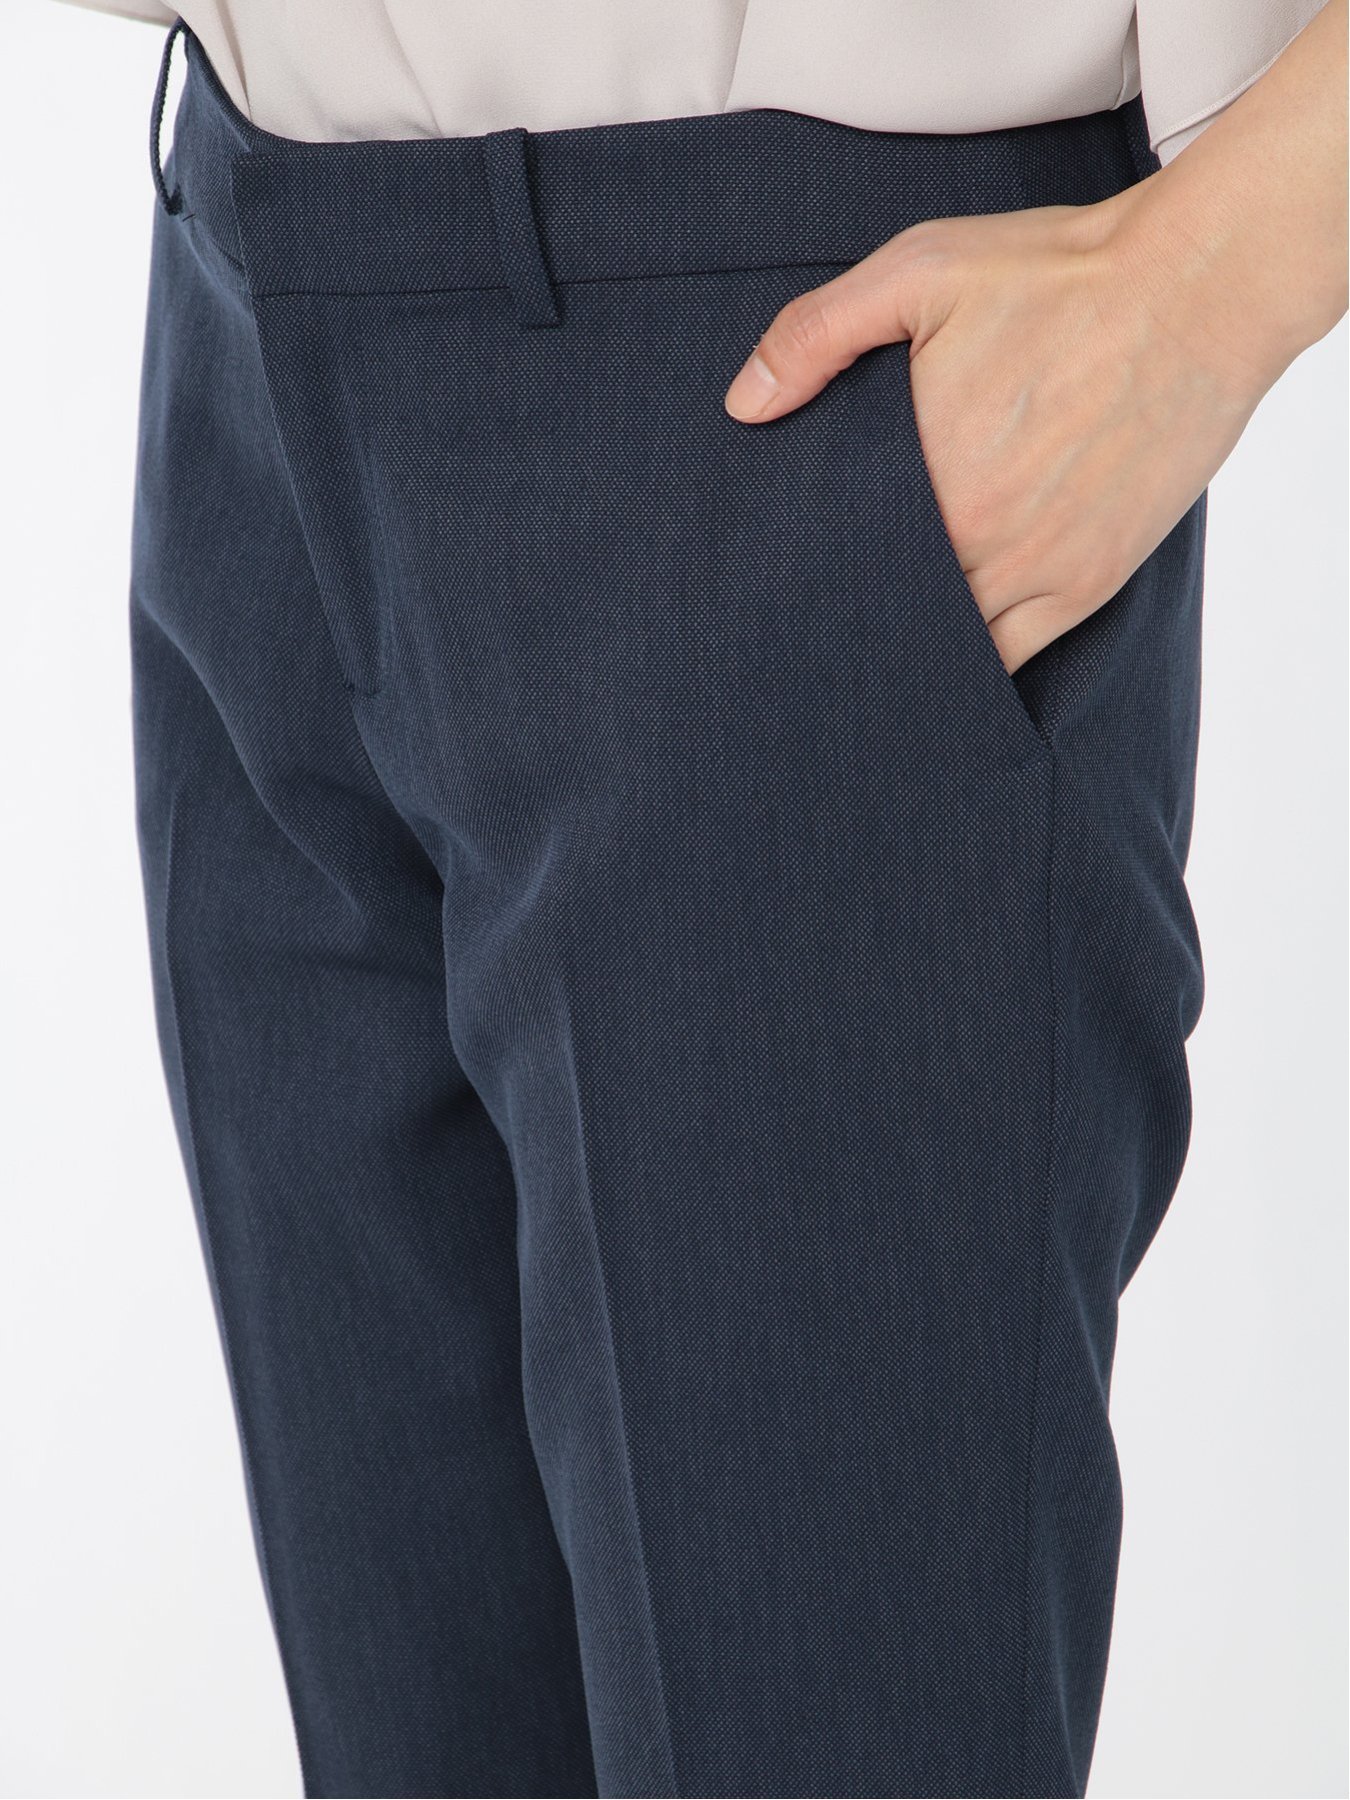 ストレッチウォッシャブル カラーレスジャケット+スカート+パンツ 紺オックス